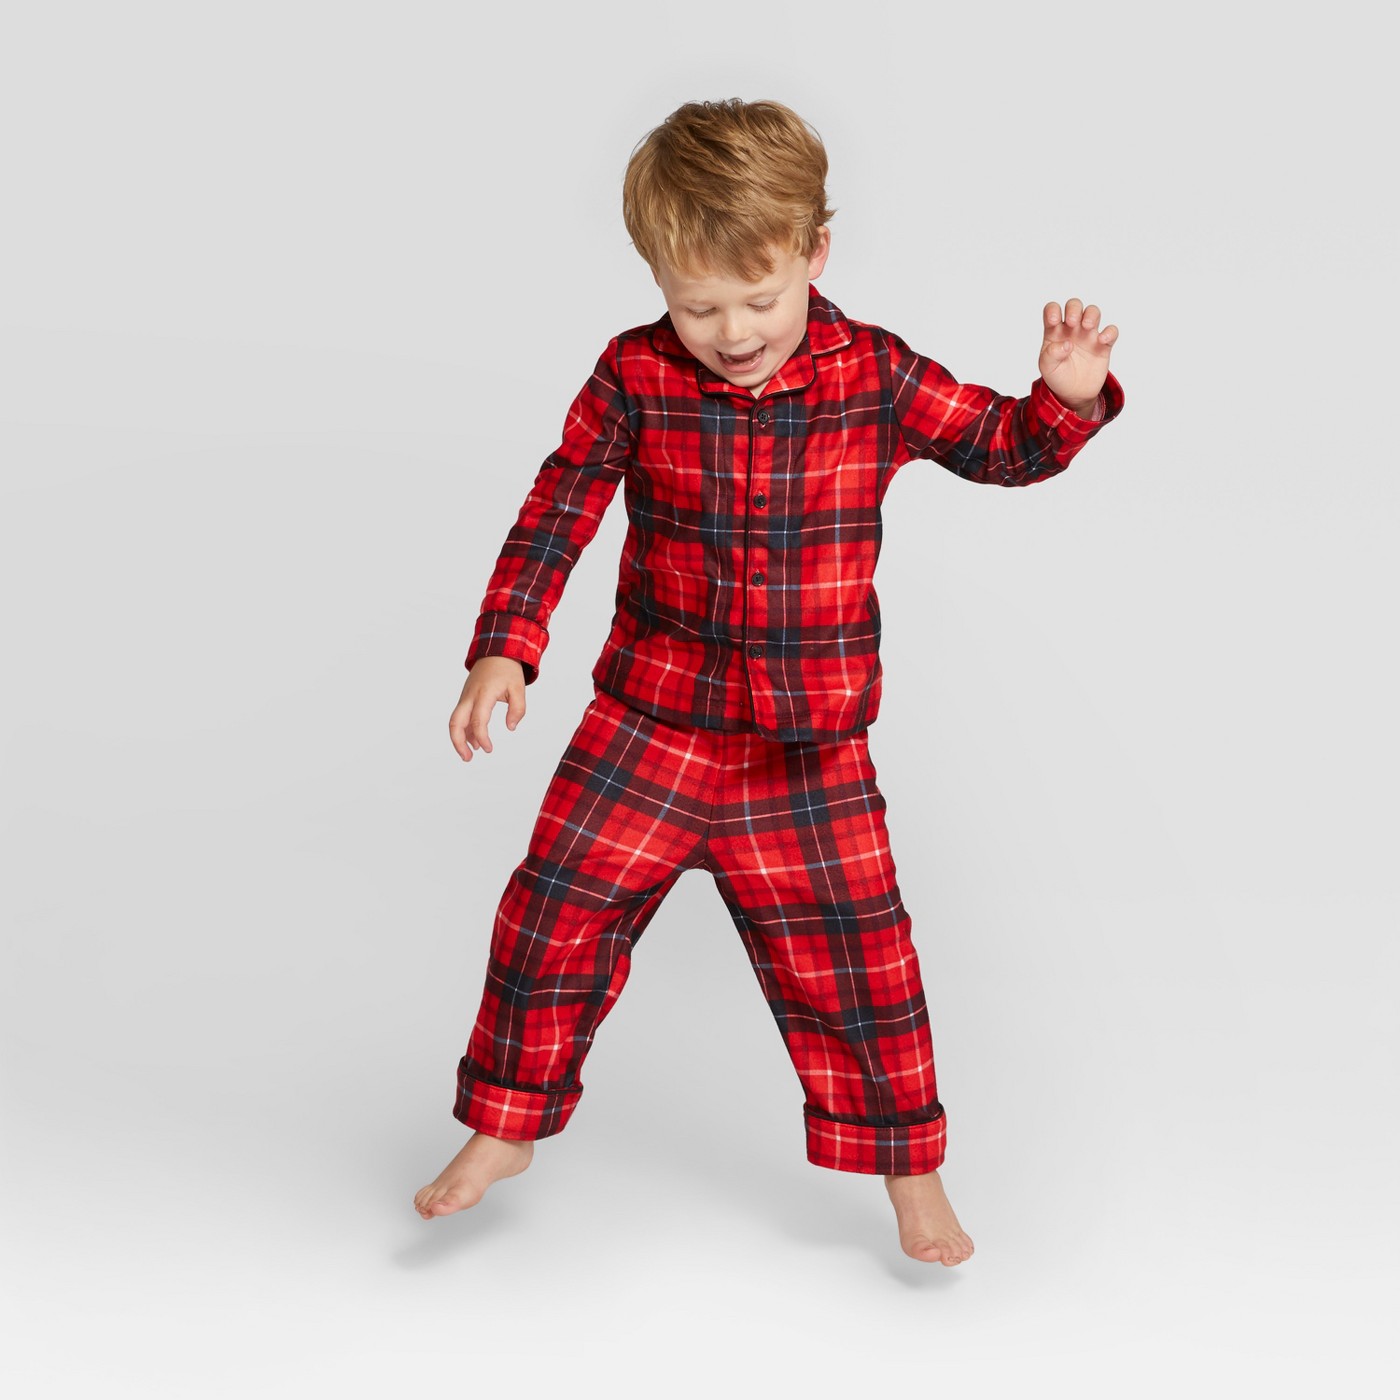 Toddler Plaid Holiday Notch Collar Pajama Set - Wondershopâ„¢ Red - image 1 of 3